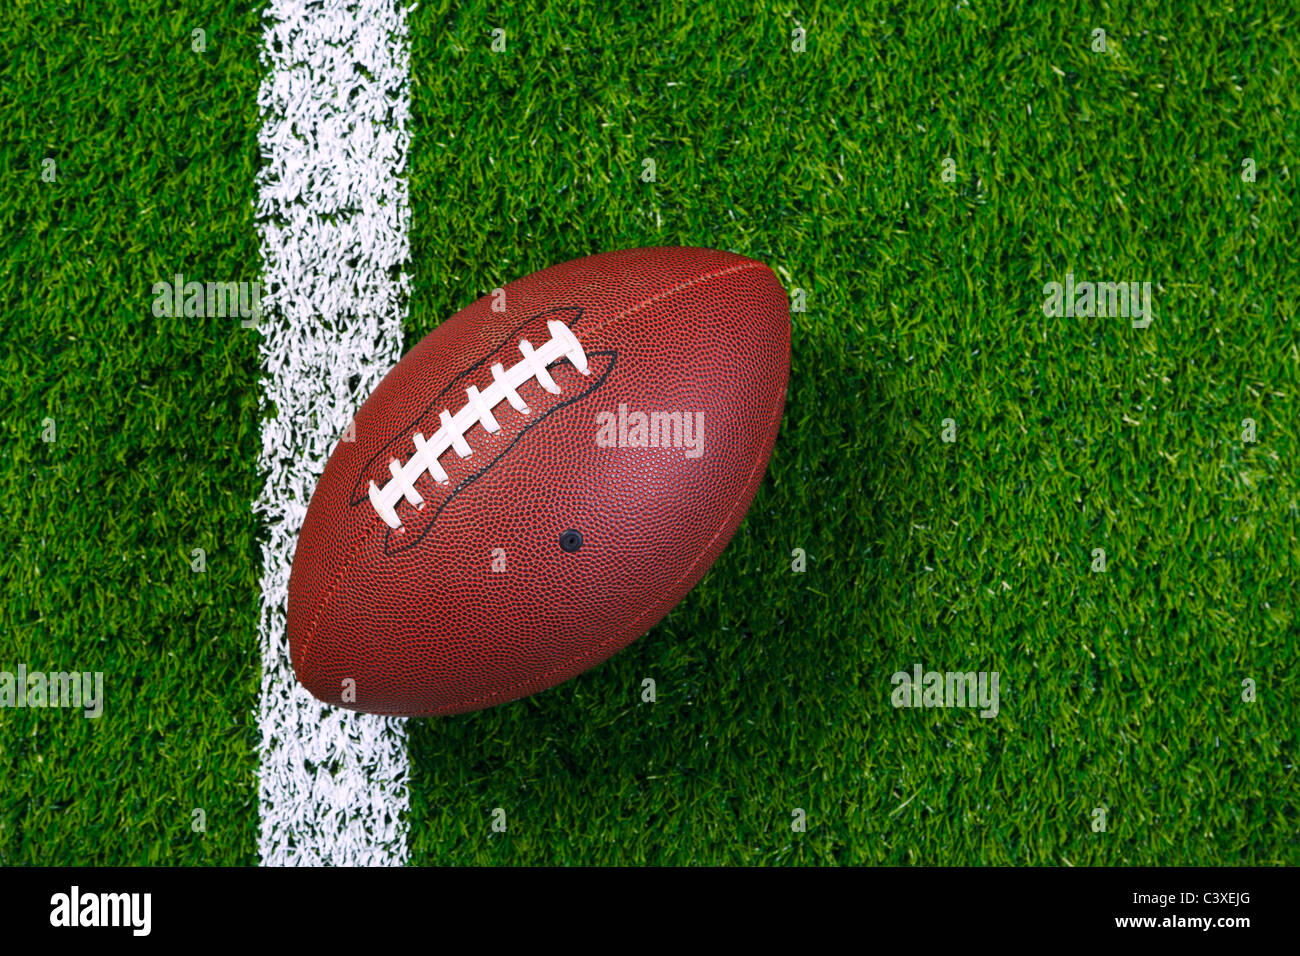 Foto von einem American Football auf einer Wiese neben der Seitenlinie, geschossen von oben. Stockfoto